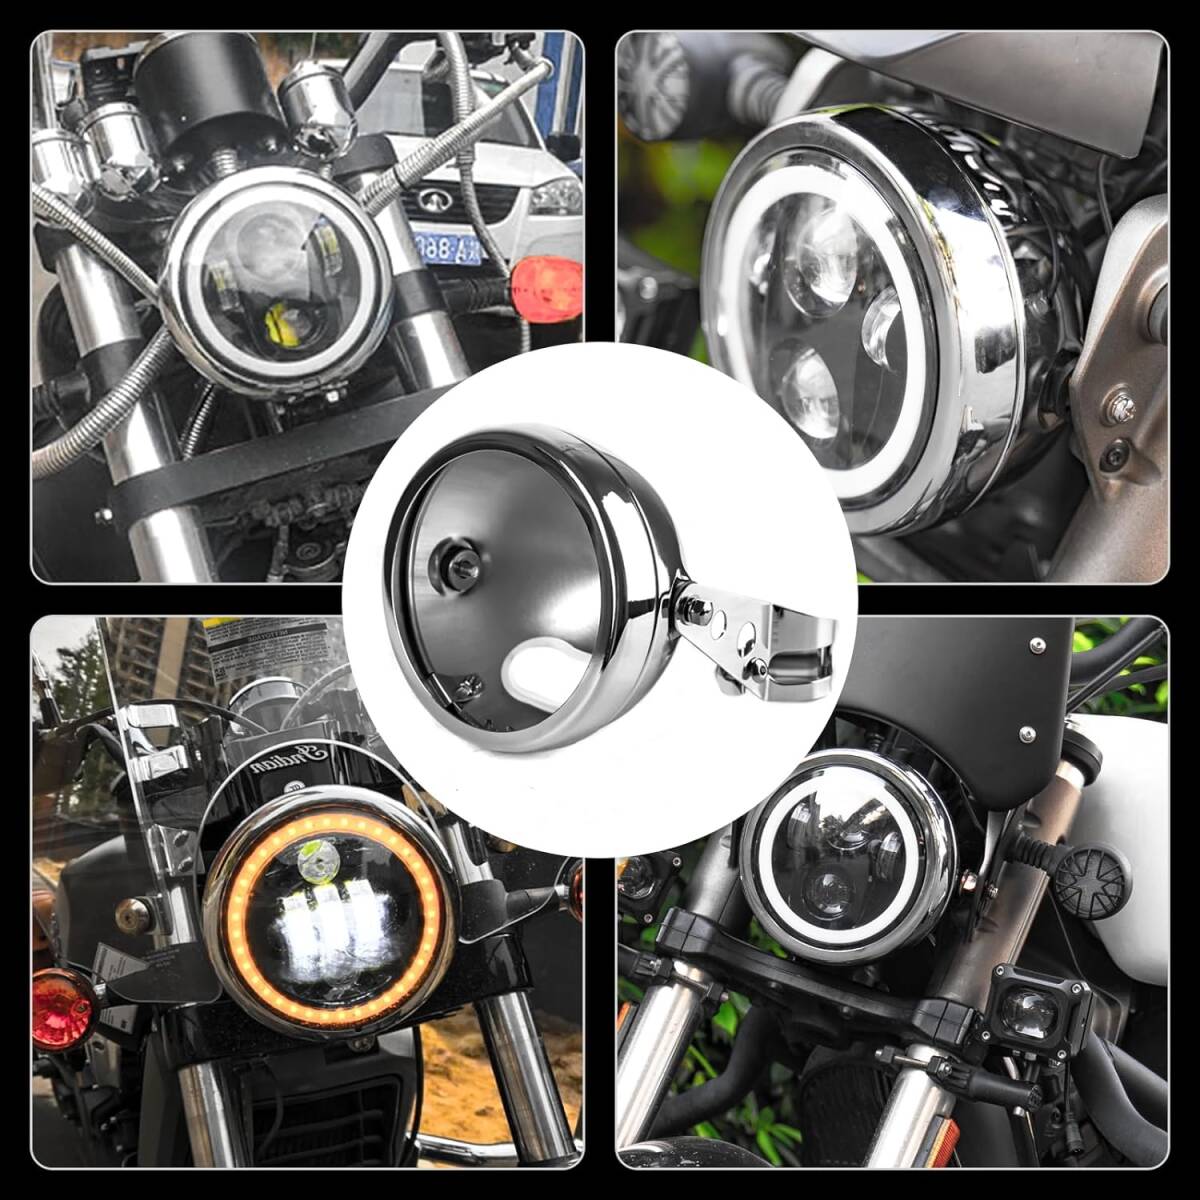 Vancroser 汎用 5.75インチ ヘッドライト ハウジング オートバイ 用 ヘッドライト交換ハウジング 固定用 ハウジングキット 丸型 _画像7